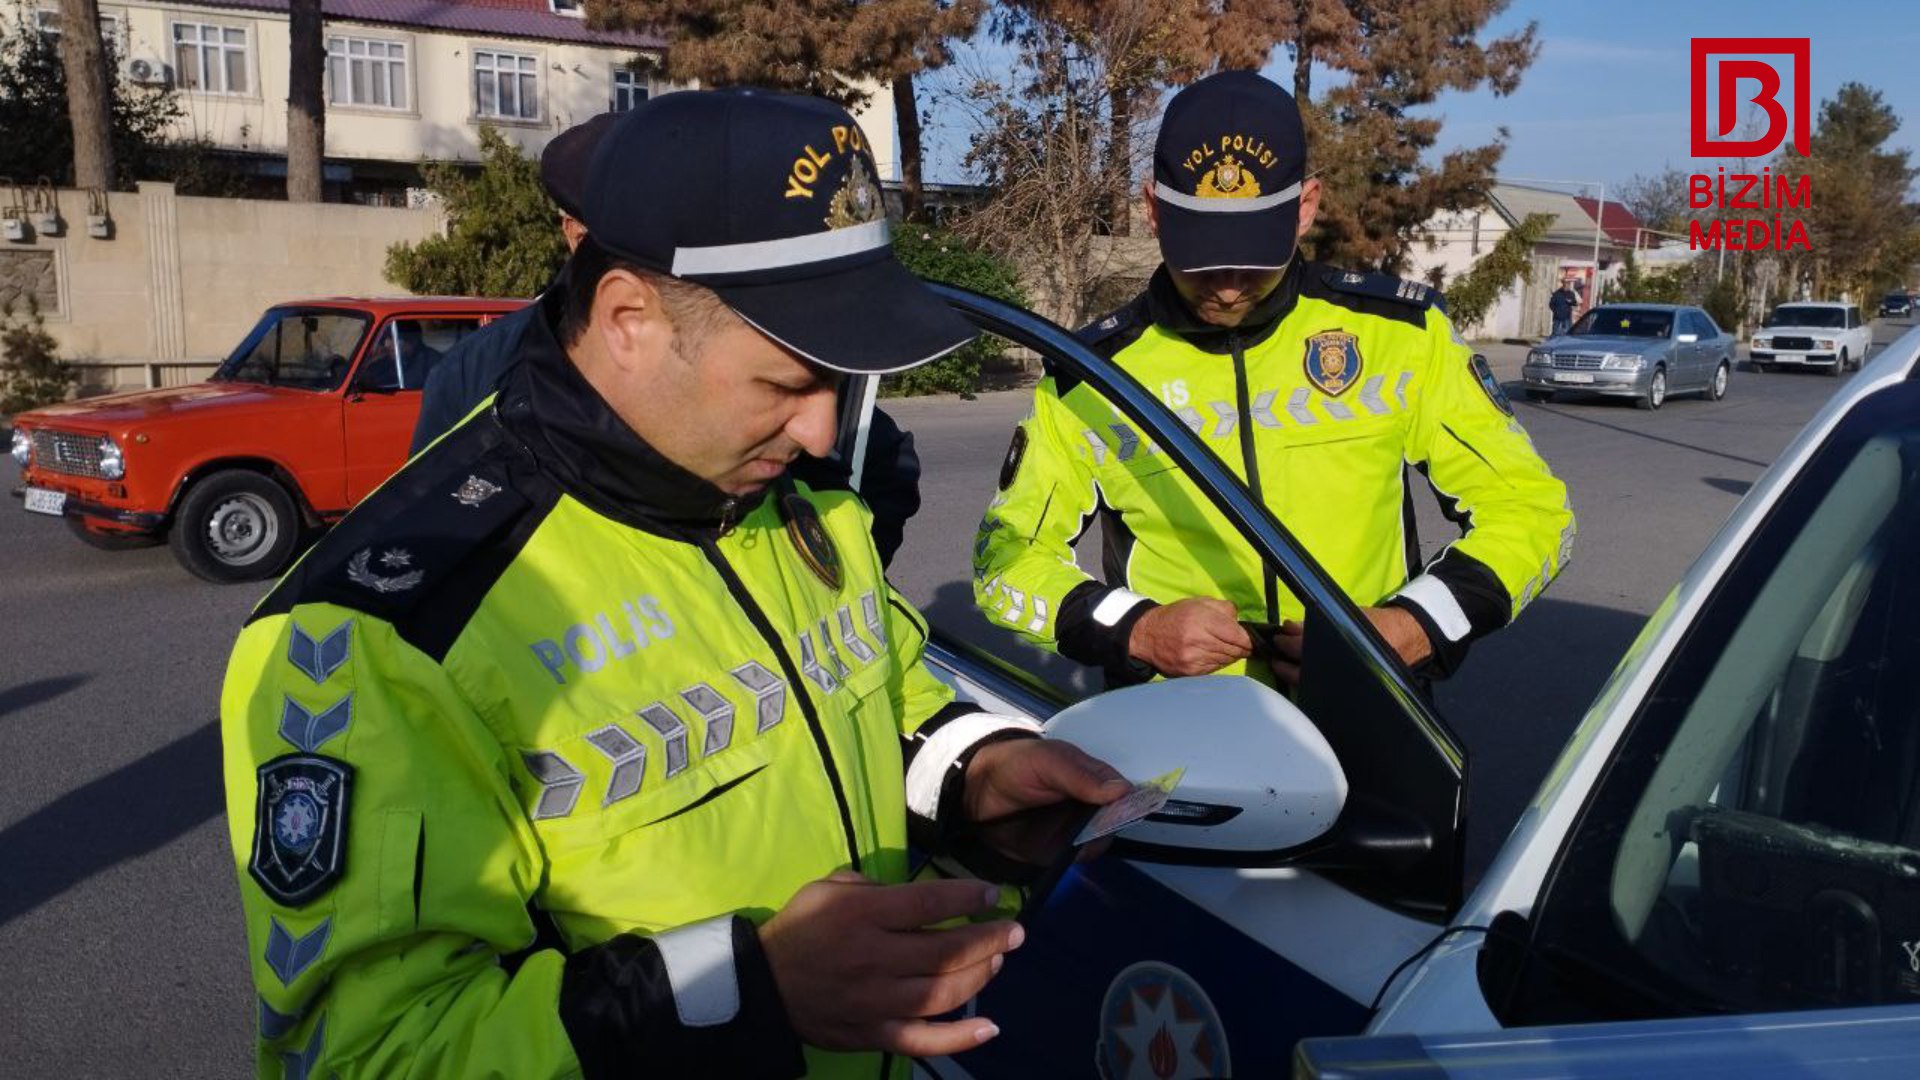 Polis Zərdabda reyd KEÇİRDİ: 18 sürücü CƏZALANDIRILDI - FOTO  